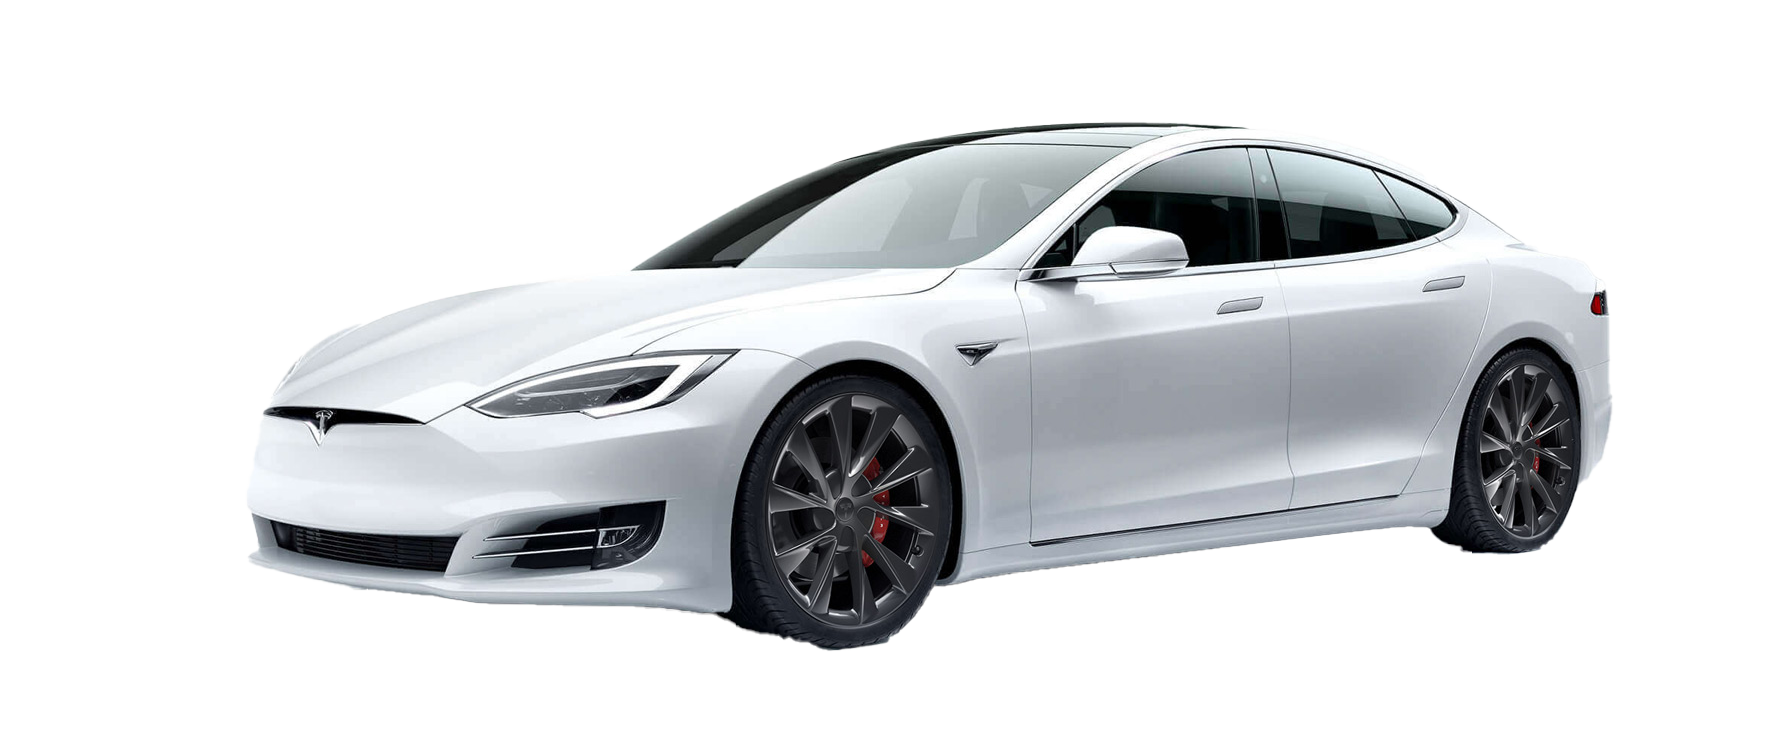 Tesla Model S PNG Background Image